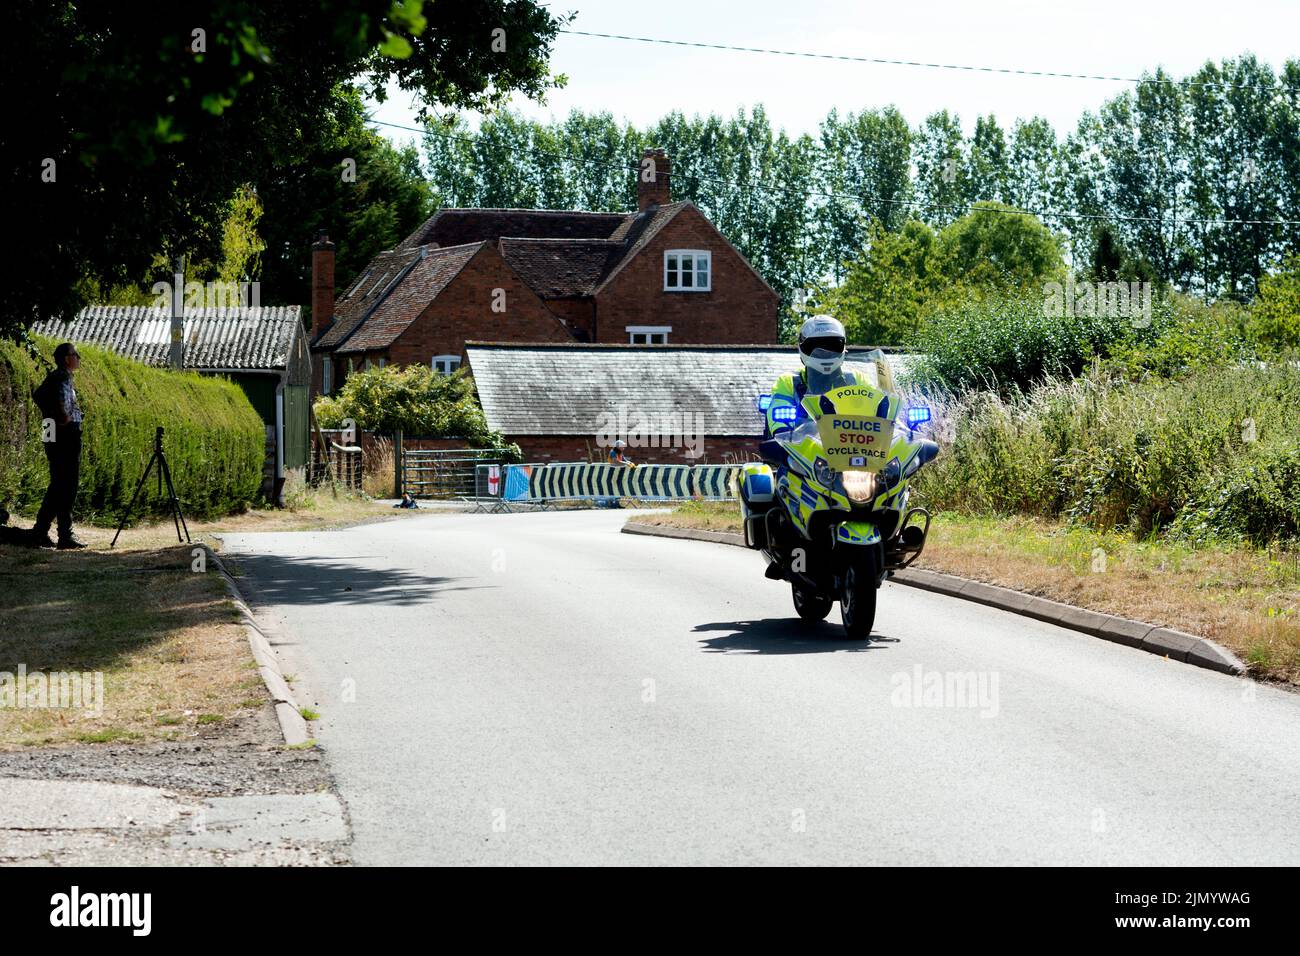 Polizei BMW Motorrad für die Commonwealth Games Radrennen 2022, Budbrooke, Warwickshire, Großbritannien Stockfoto